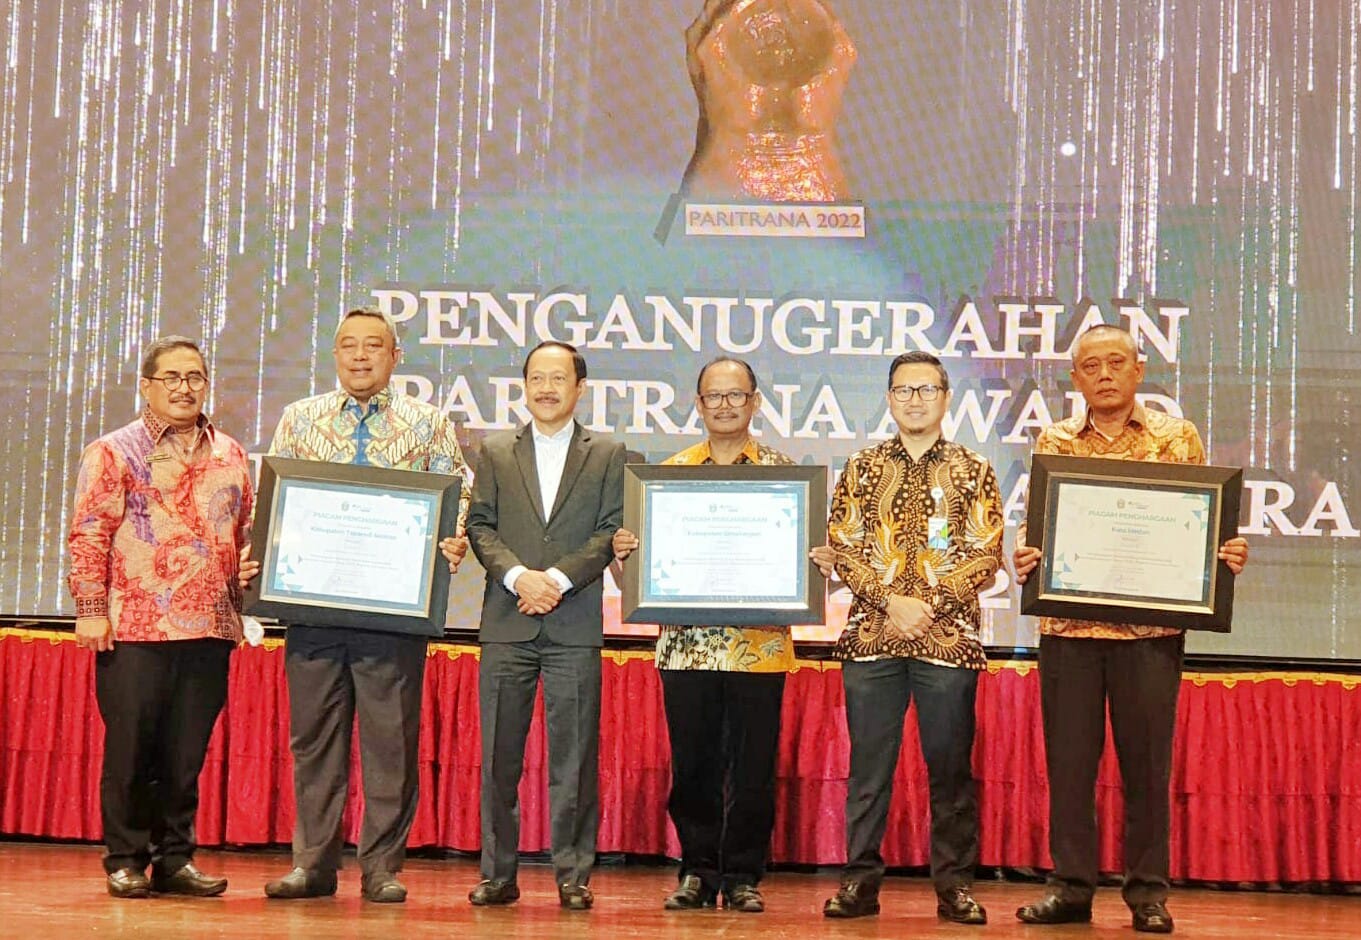 Pemkab Simalungun Terima Penghargaan Paritrana Award 2022